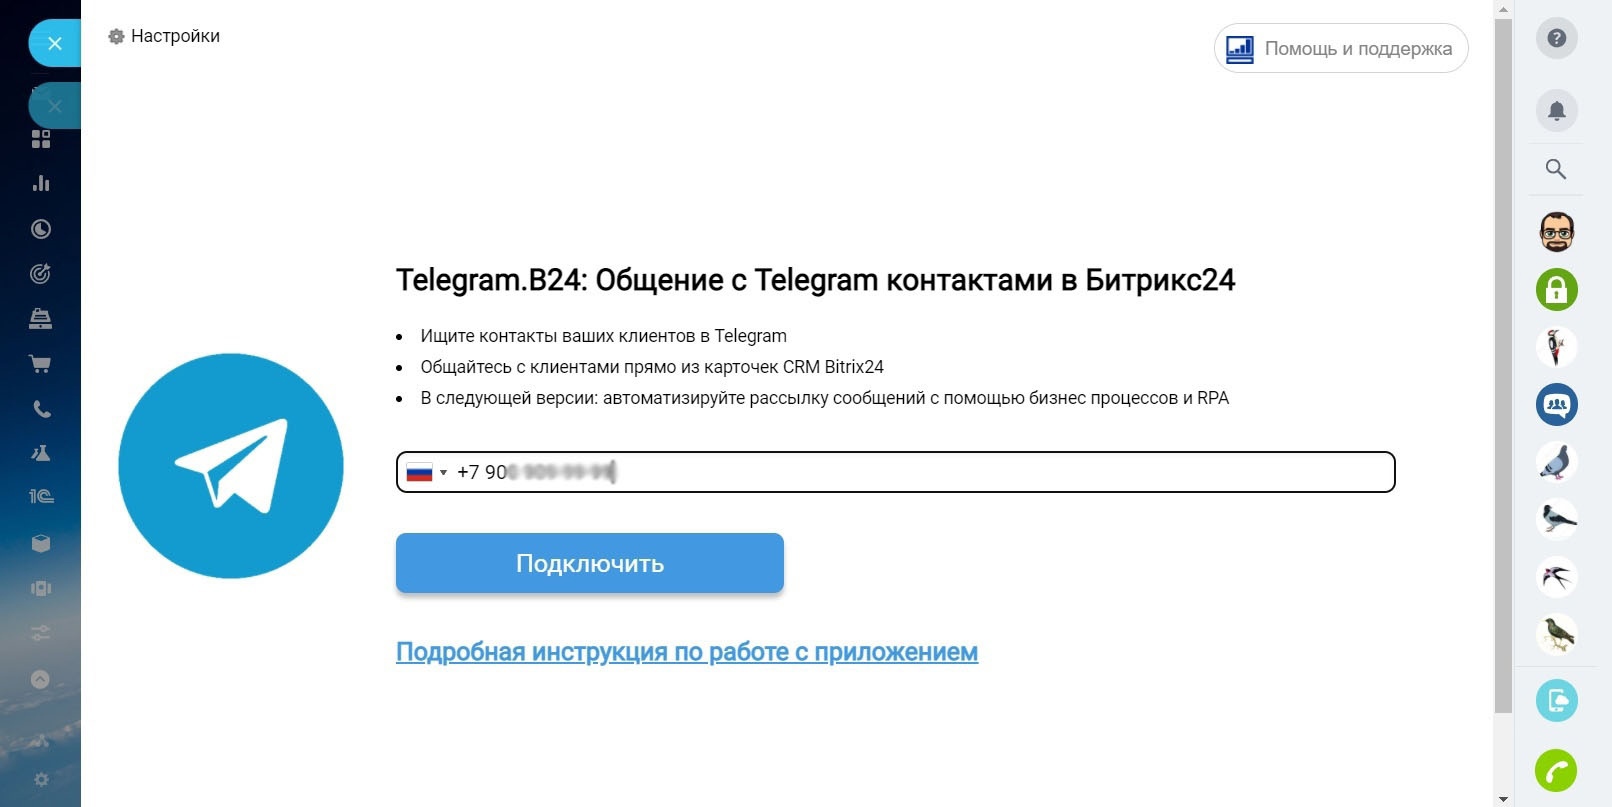 Установить приложение телеграмм на телефон бесплатно без регистрации на русском языке фото 99